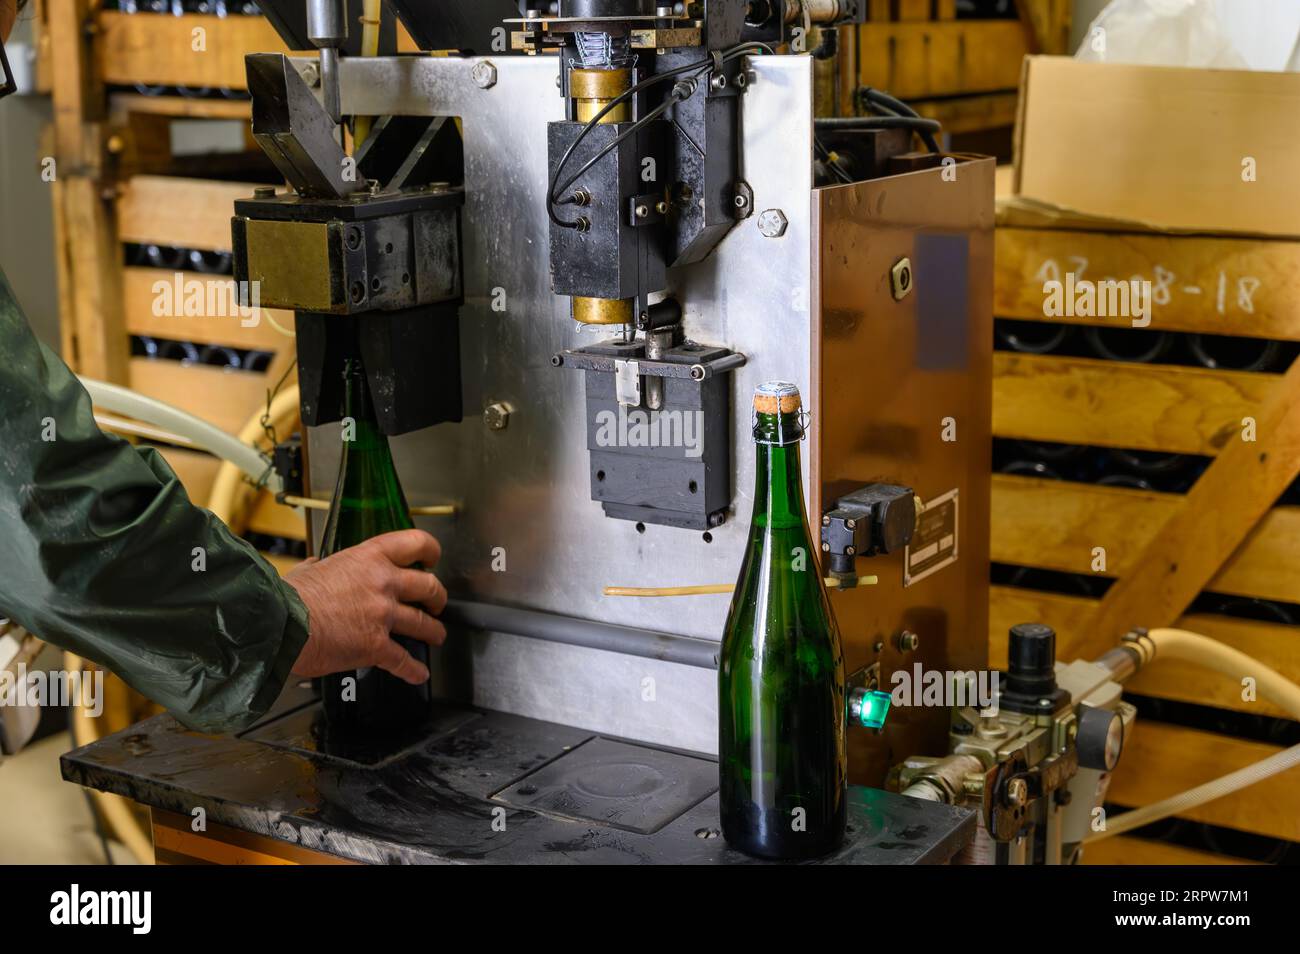 Procedura di sgorgamento e aggiunta di liquori dolci, metodo tradizionale di produzione di spumante da uve chardonnay e Pinor noir a Epernay, C Foto Stock